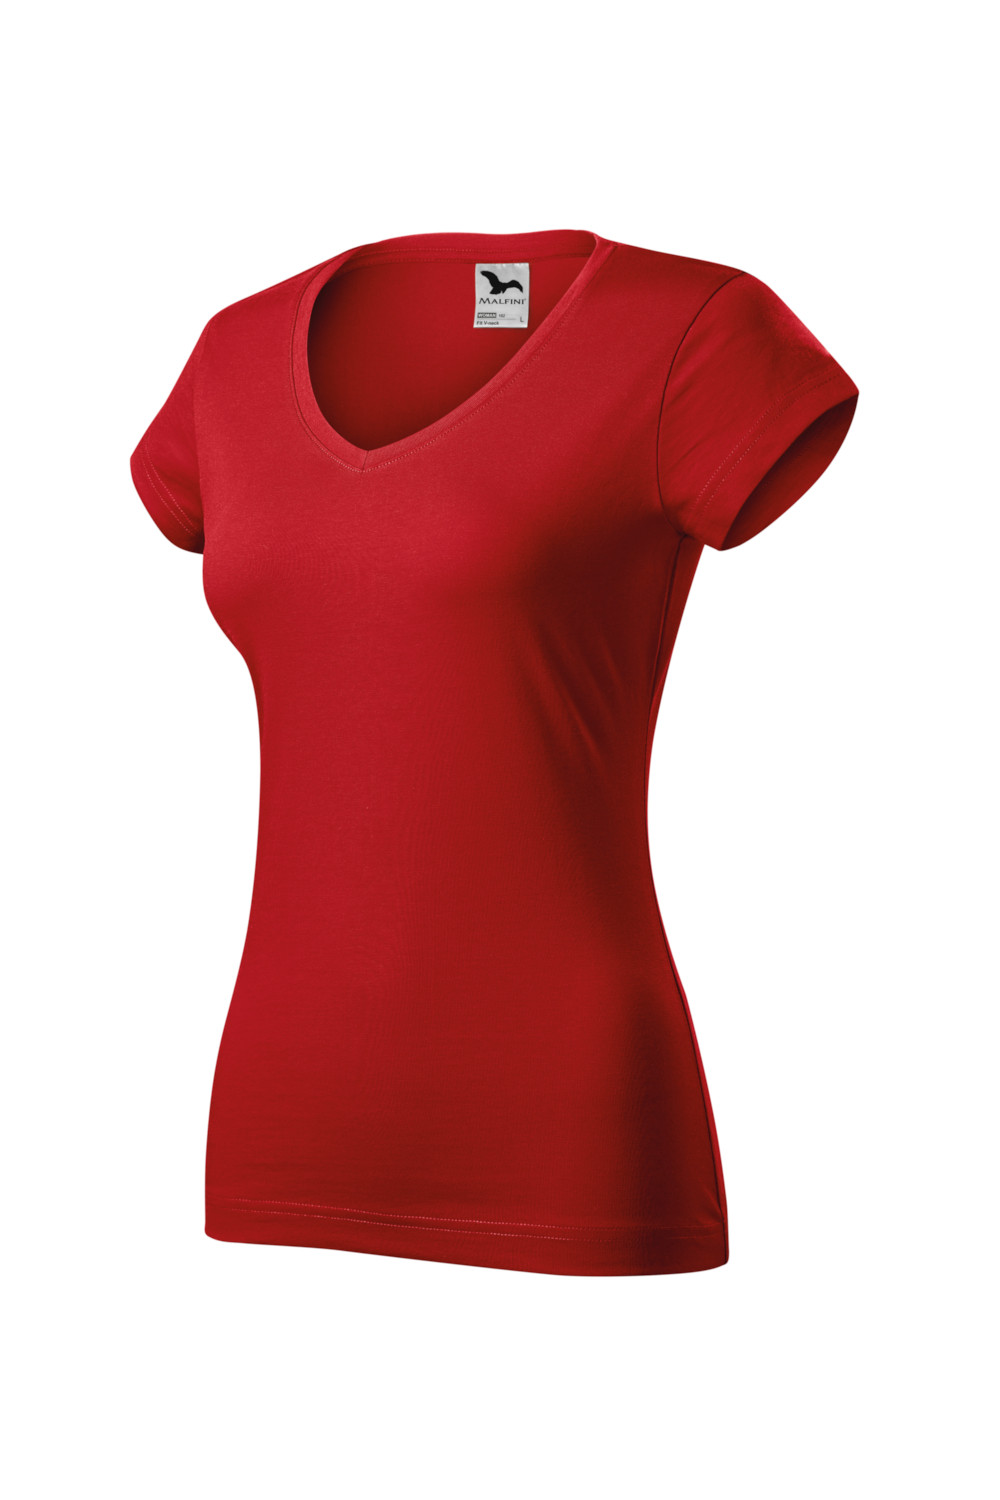 Koszulka damska 100% bawełna V-NECK 162 czerwony